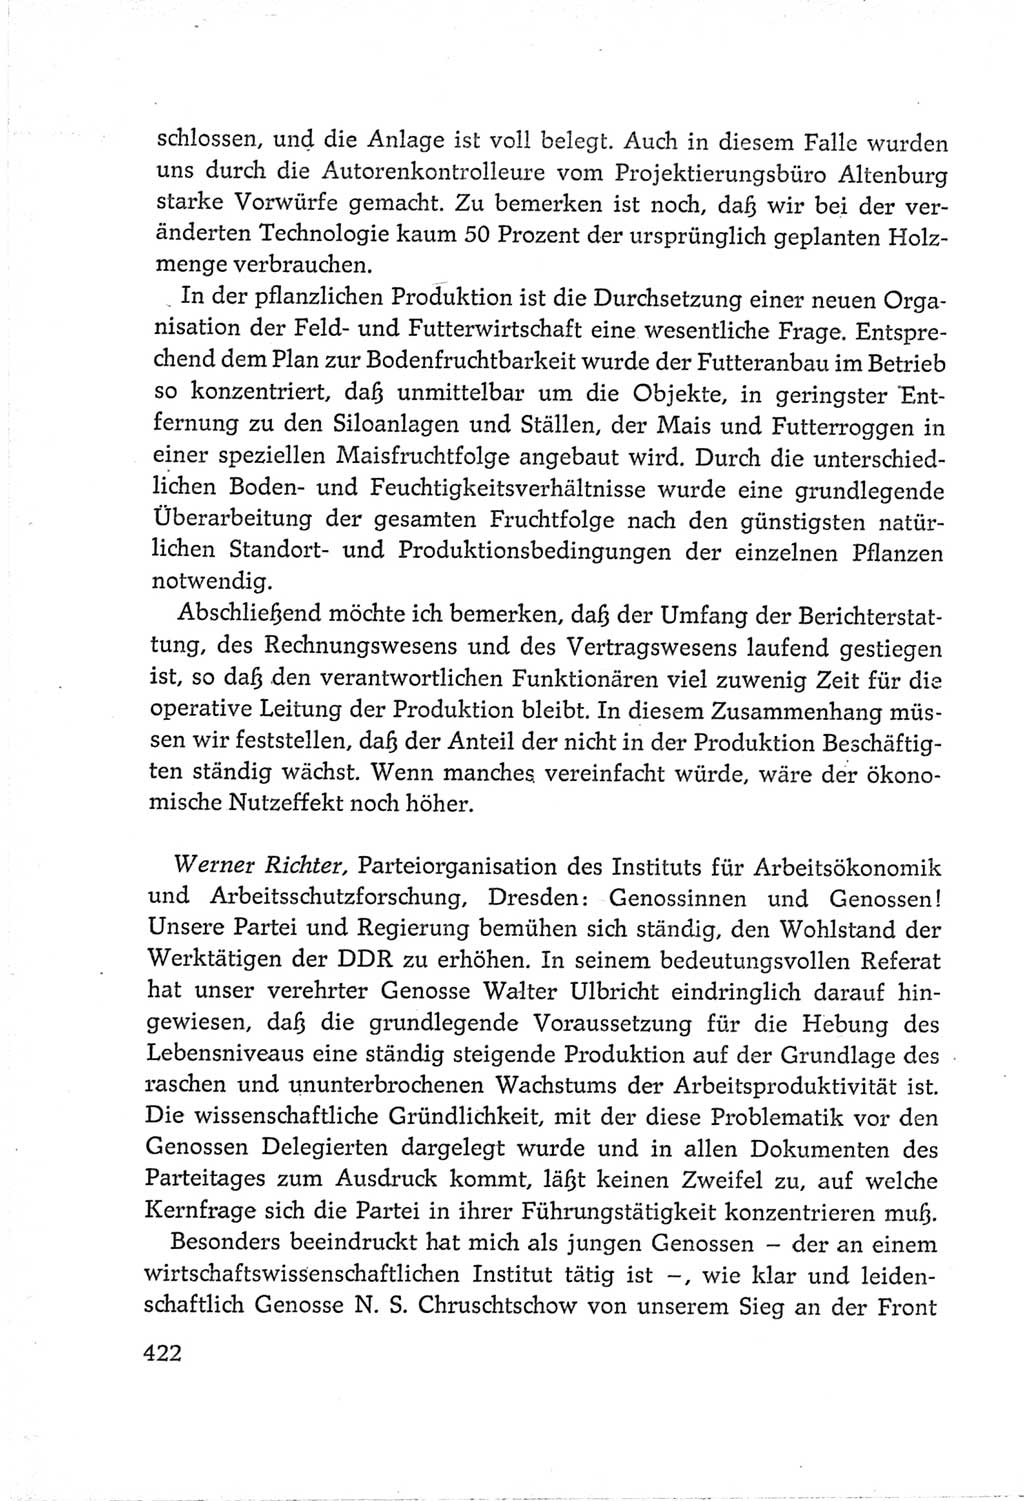 Protokoll der Verhandlungen des Ⅵ. Parteitages der Sozialistischen Einheitspartei Deutschlands (SED) [Deutsche Demokratische Republik (DDR)] 1963, Band Ⅲ, Seite 422 (Prot. Verh. Ⅵ. PT SED DDR 1963, Bd. Ⅲ, S. 422)